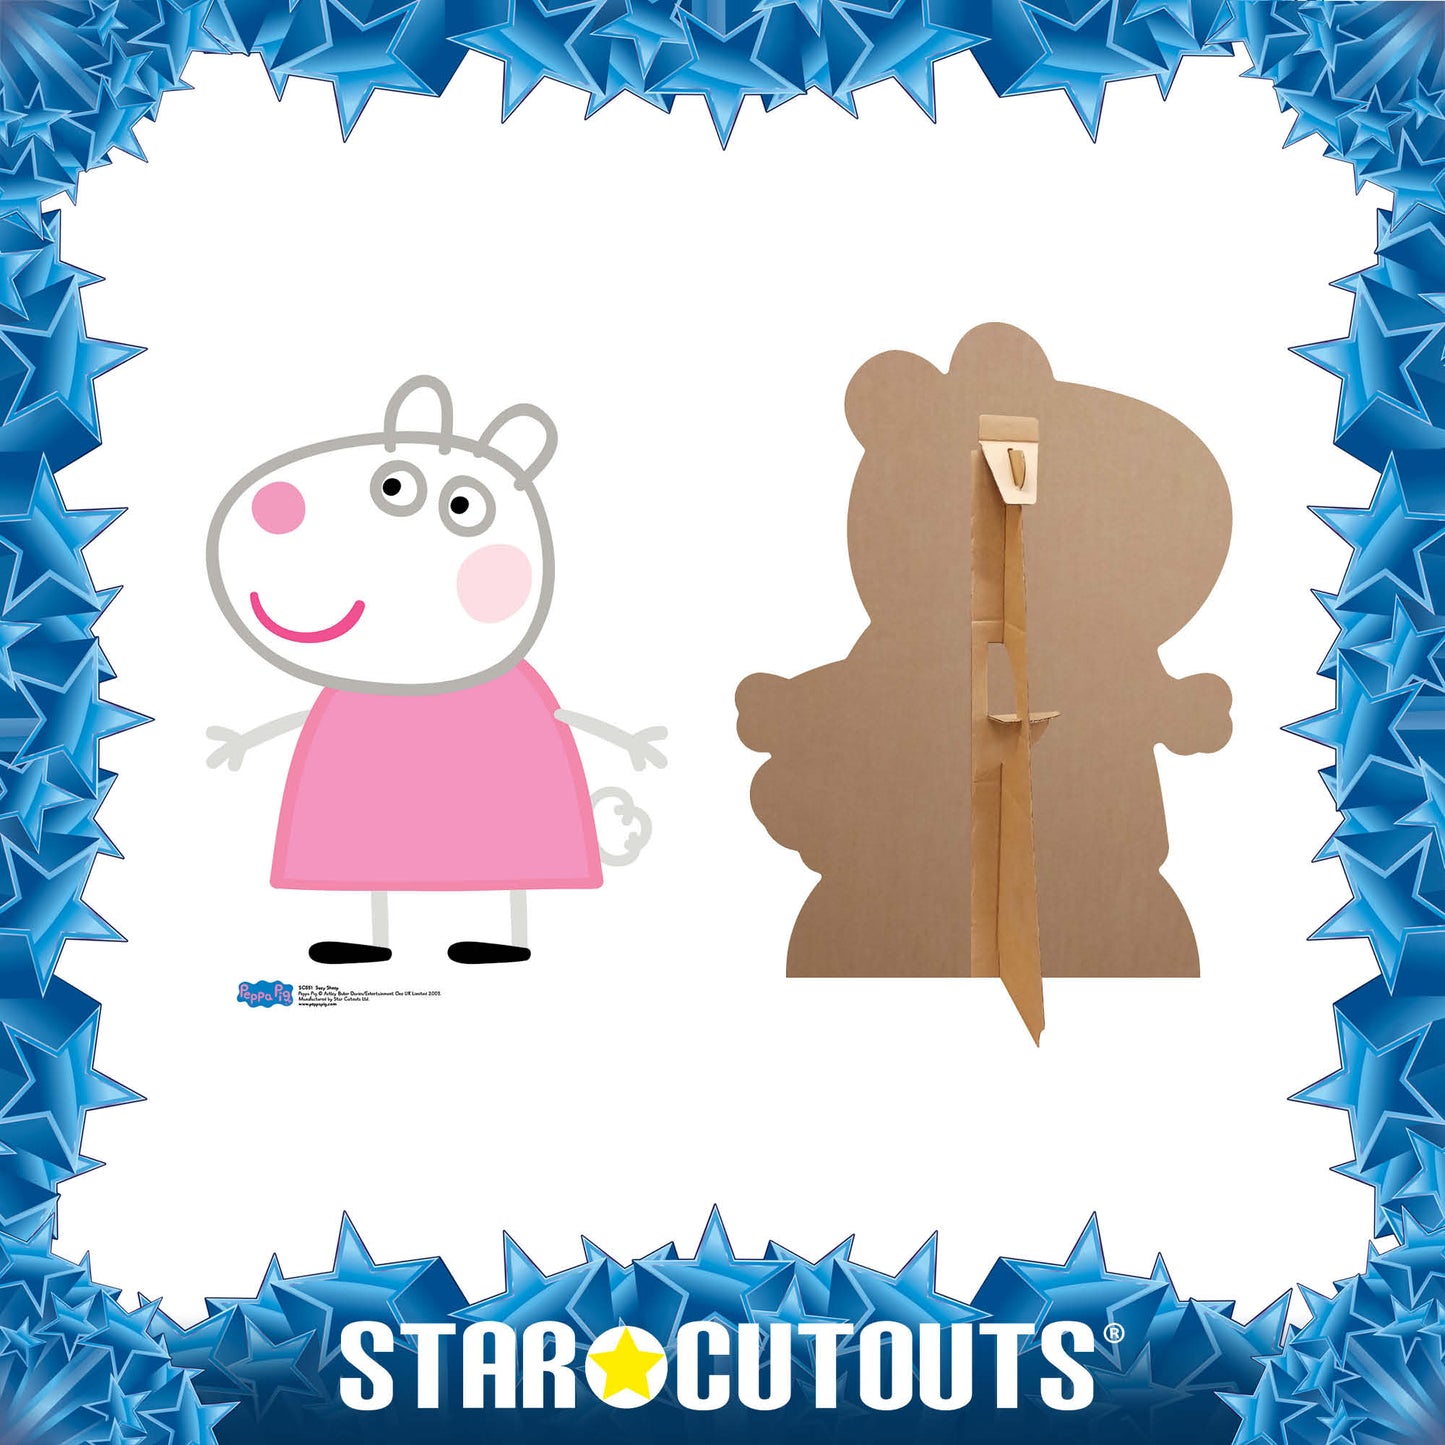 Suzy Sheep Star Mini Cutout Cardboard Cutout